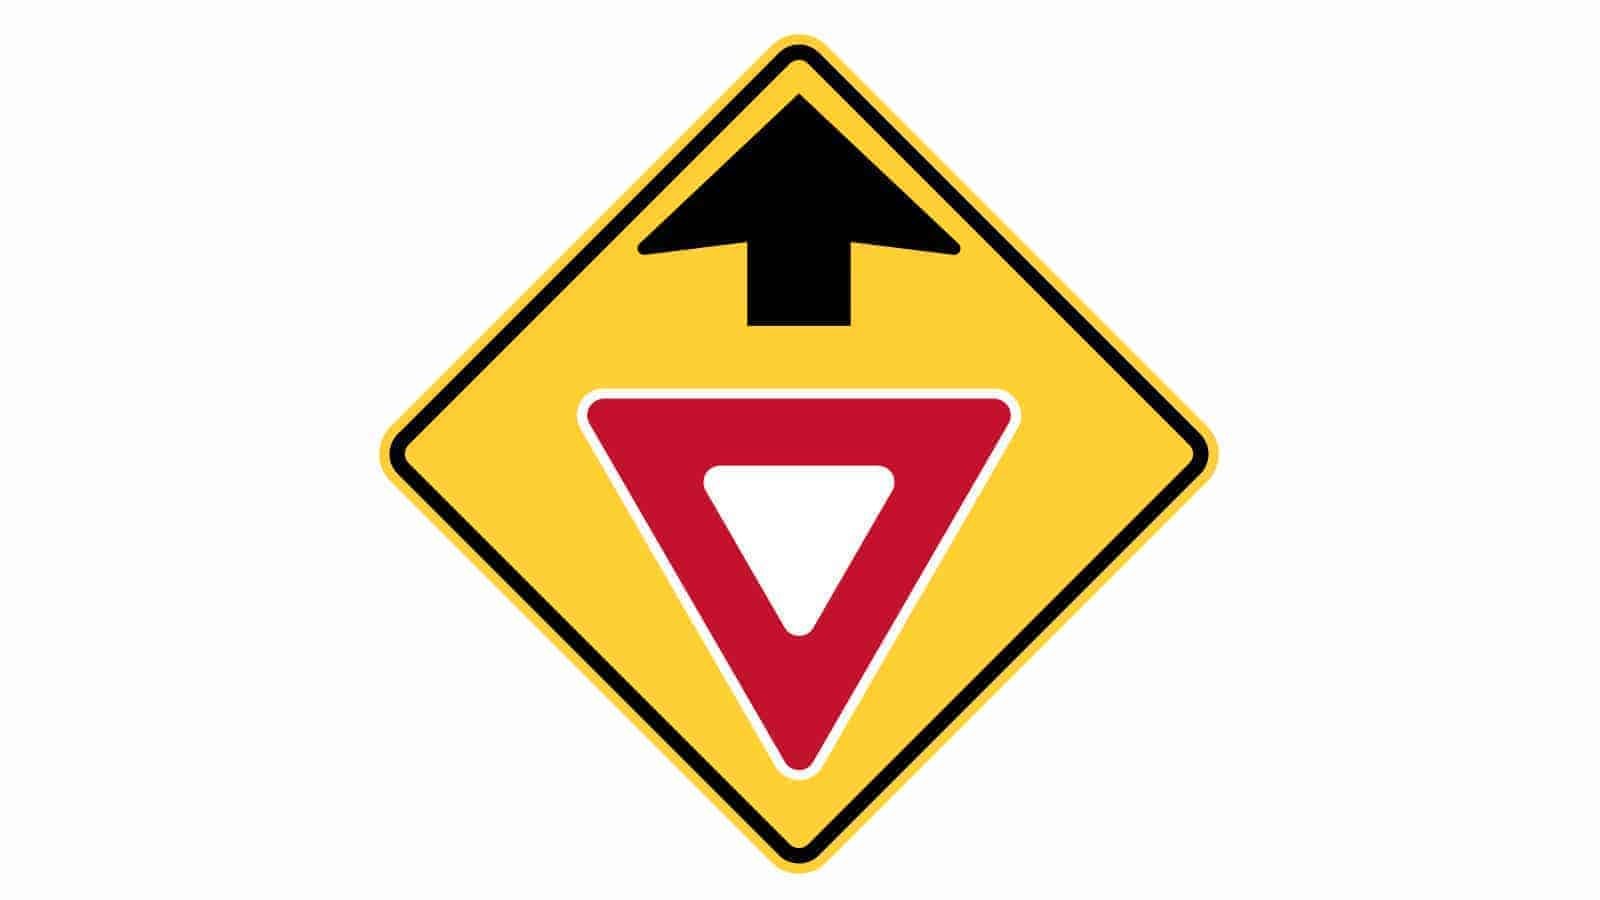 Warning sign yield sign ahead